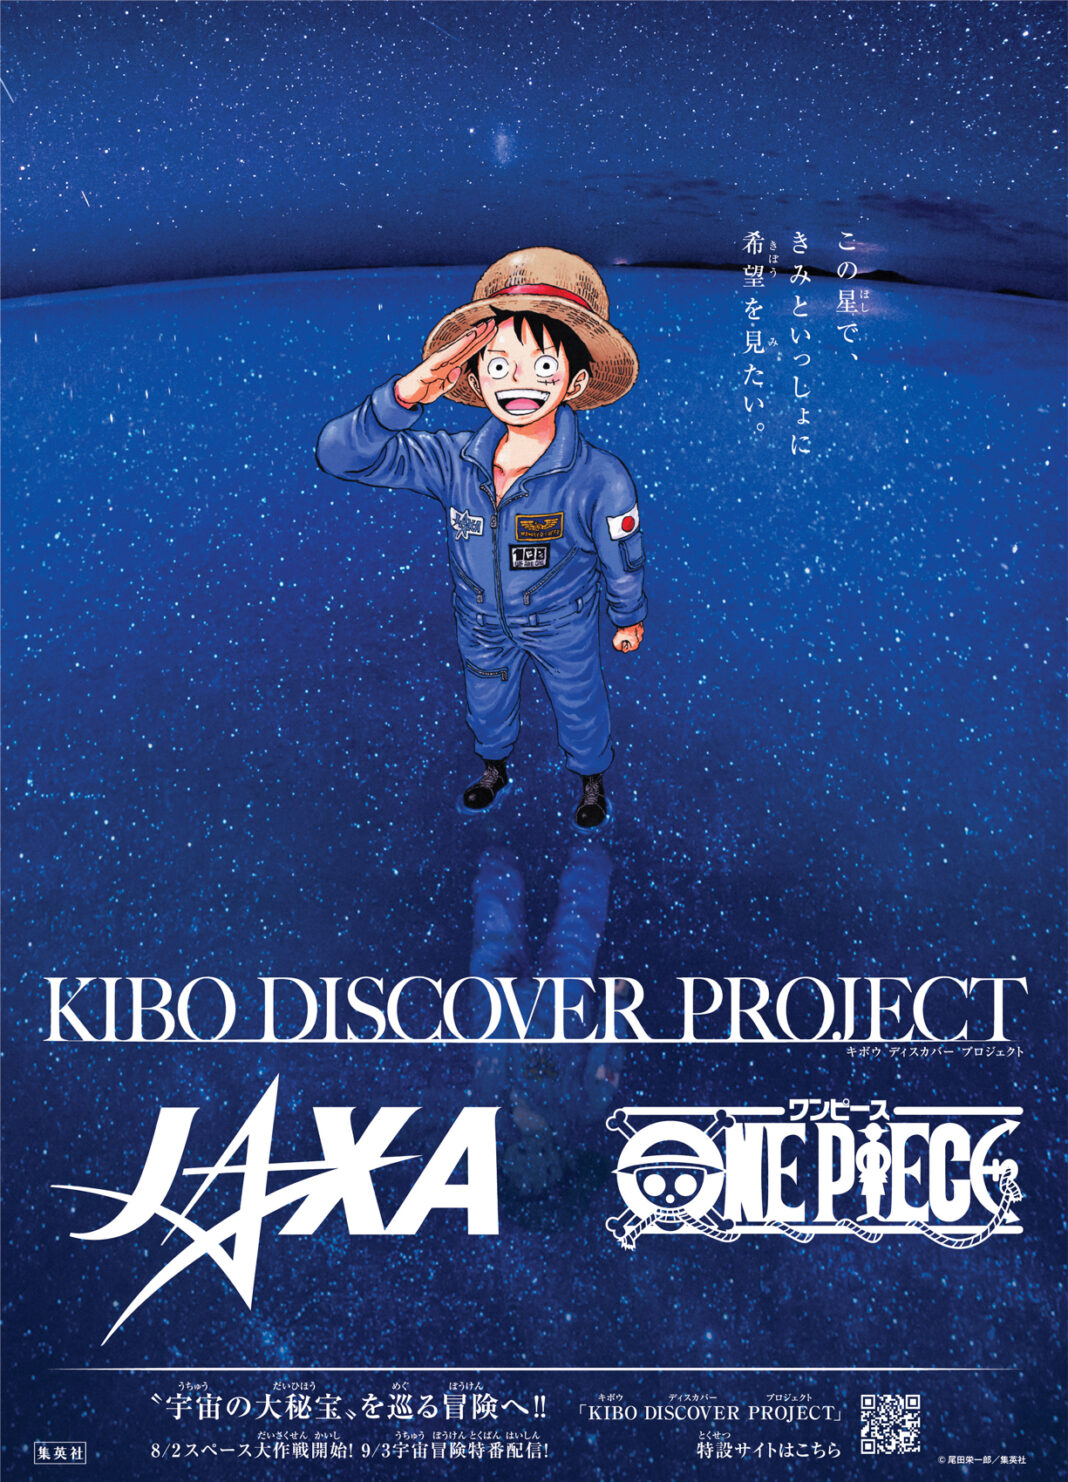 この星で、きみといっしょに希望をみたい JAXA ×『ONE PIECE』×KIBO宇宙放送局「KIBO DISCOVER PROJECT」始動!!のメイン画像